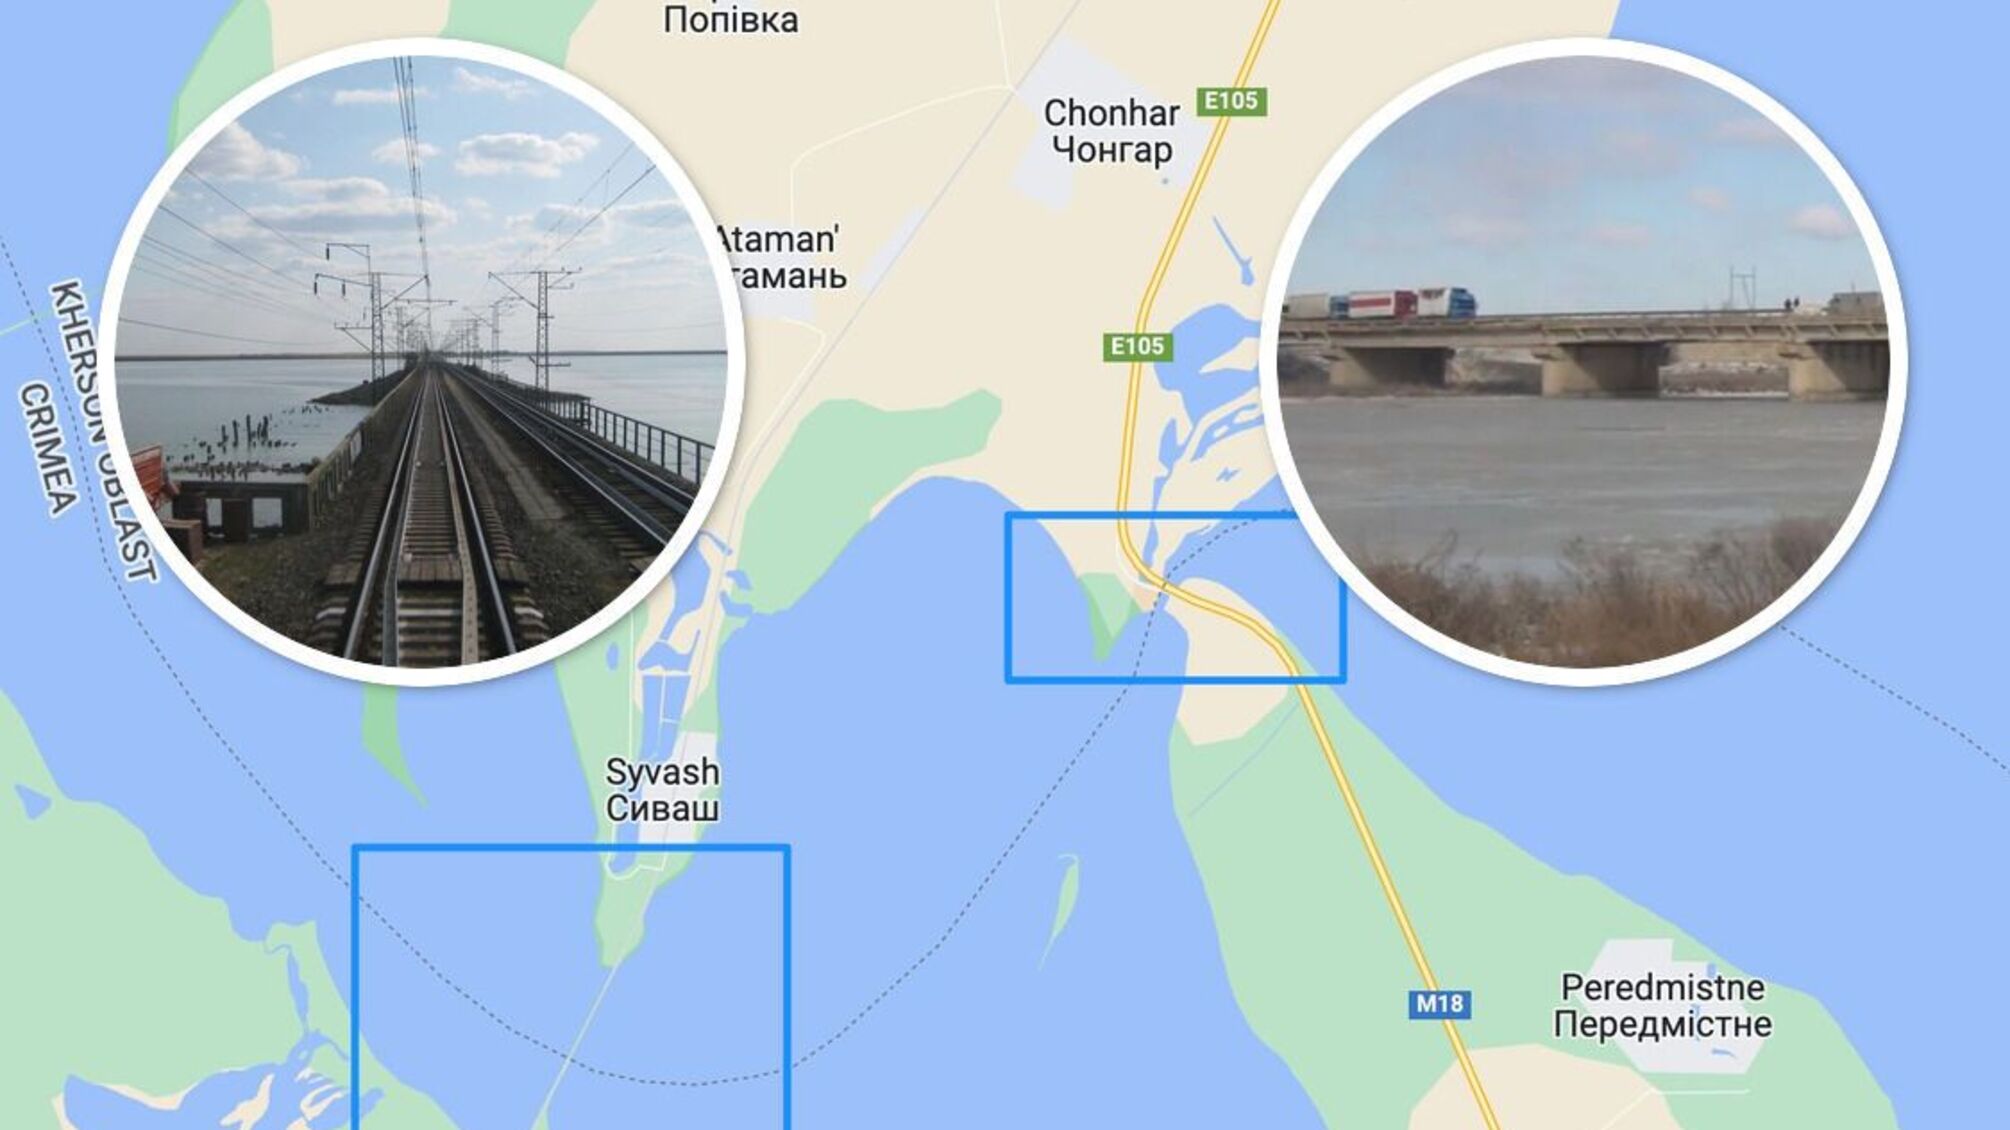 Логістика забезпечення угрупувань ворога на півдні залежить від двох мостів з Криму